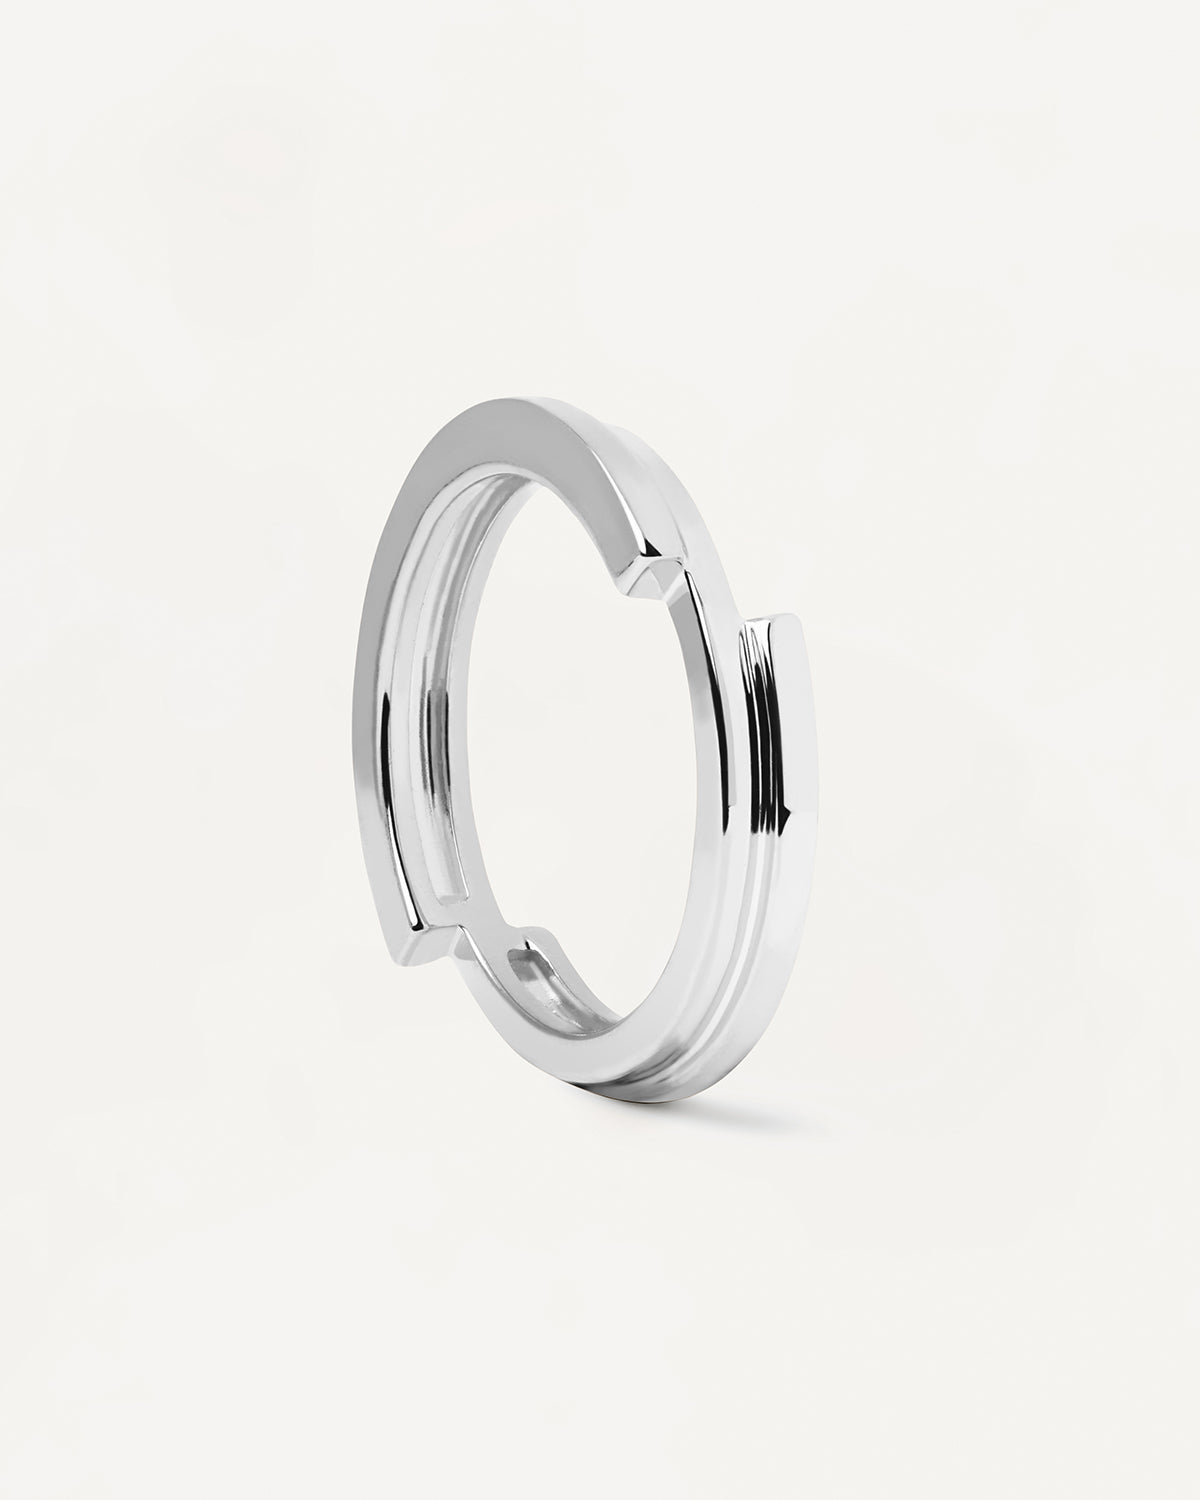 Genesis Silberring. Ring aus Sterlingsilber mit asymmetrischem Design. Erhalten Sie die neuesten Produkte von PDPAOLA. Geben Sie Ihre Bestellung sicher auf und erhalten Sie diesen Bestseller.